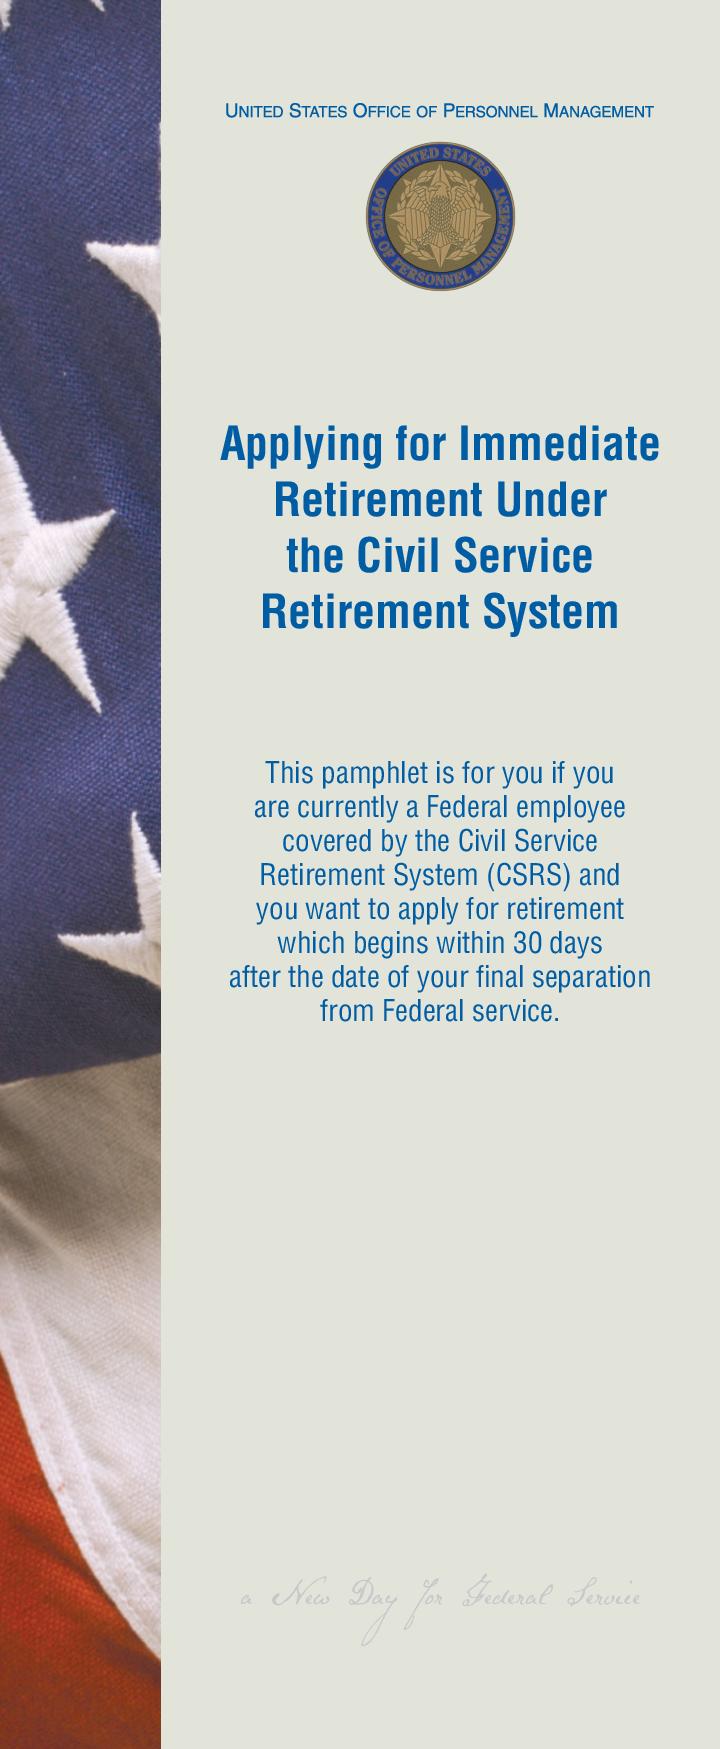 Applying for Immediate Retirement Under the Civil Service Retirement System - Retirement Pamphlet 